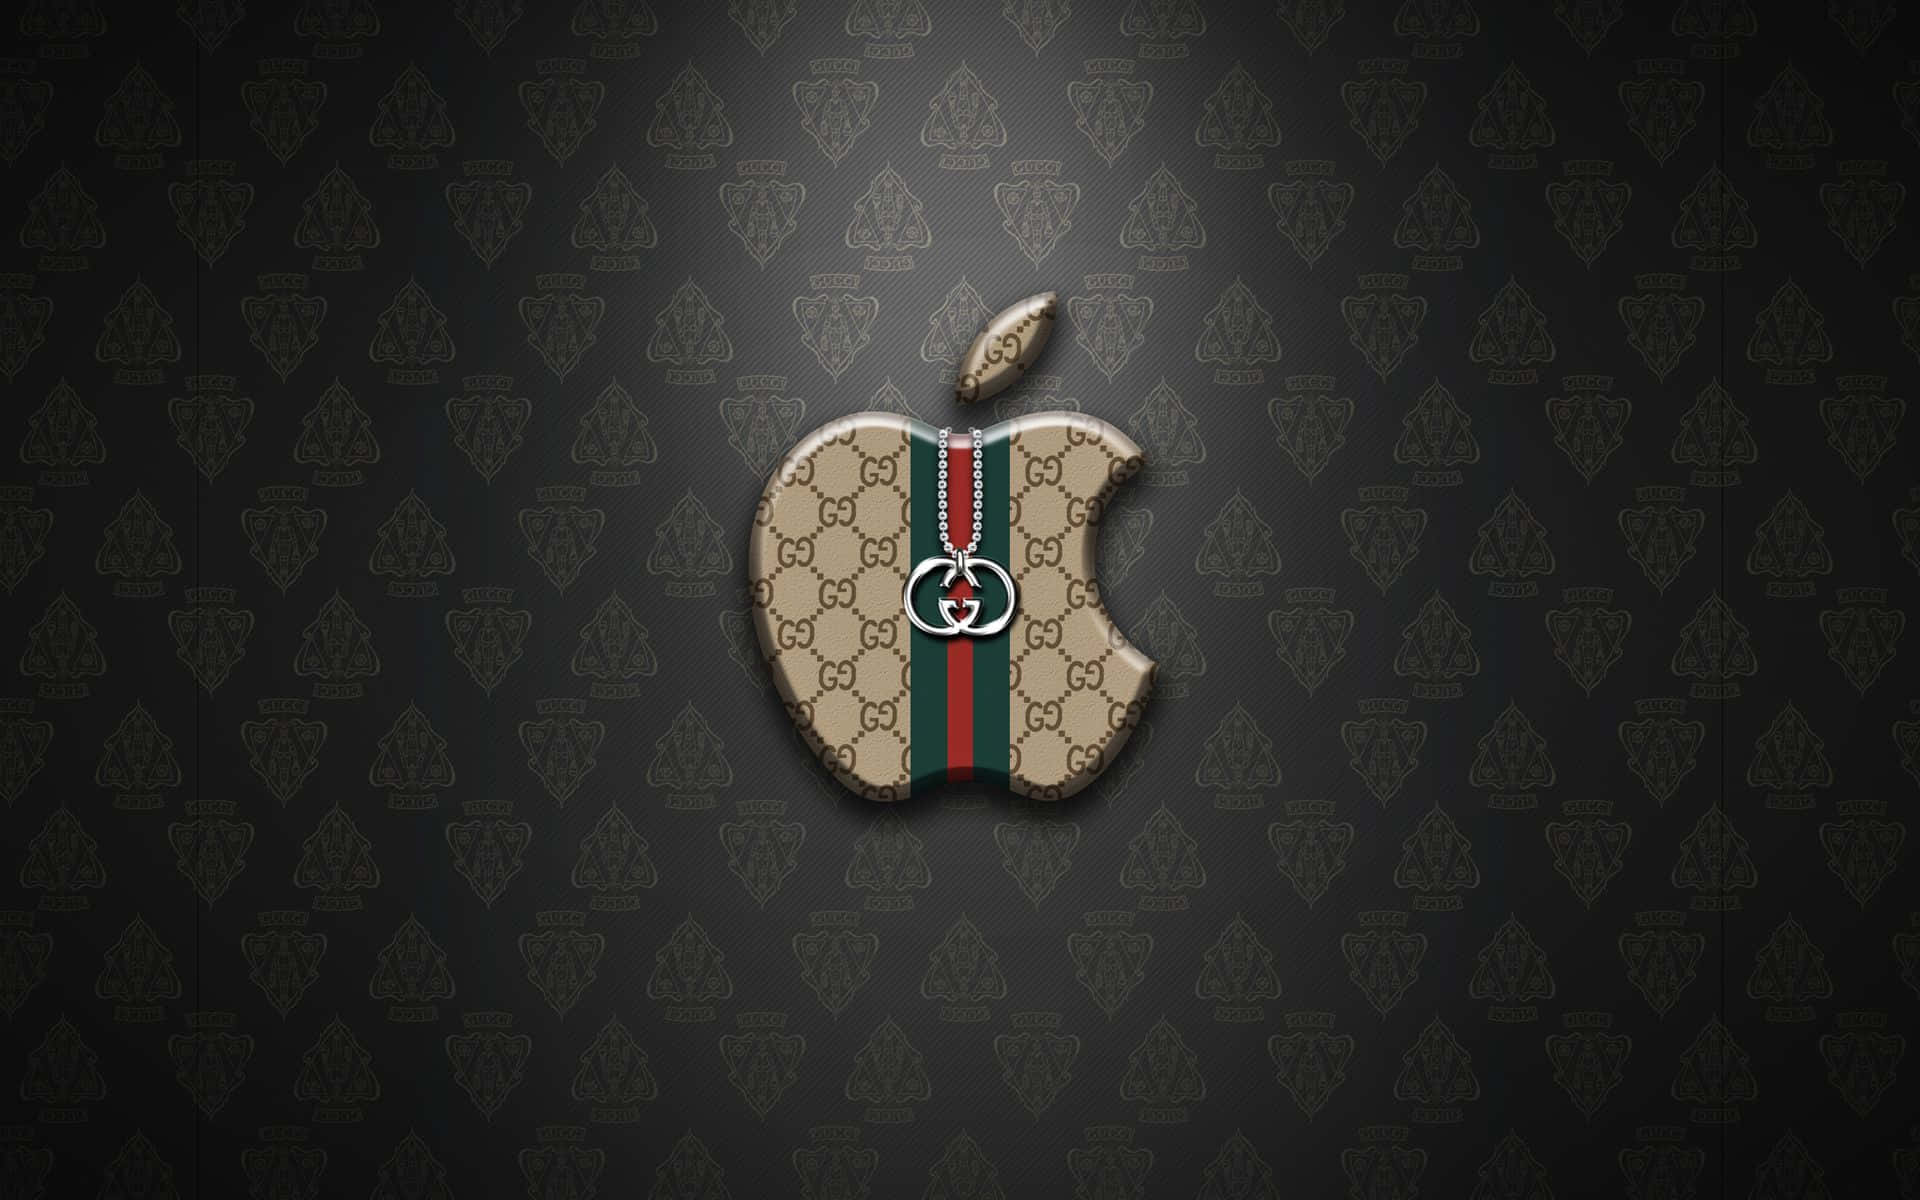 Fondode Pantalla Genial Con El Logo De Gucci Y La Manzana De Apple.